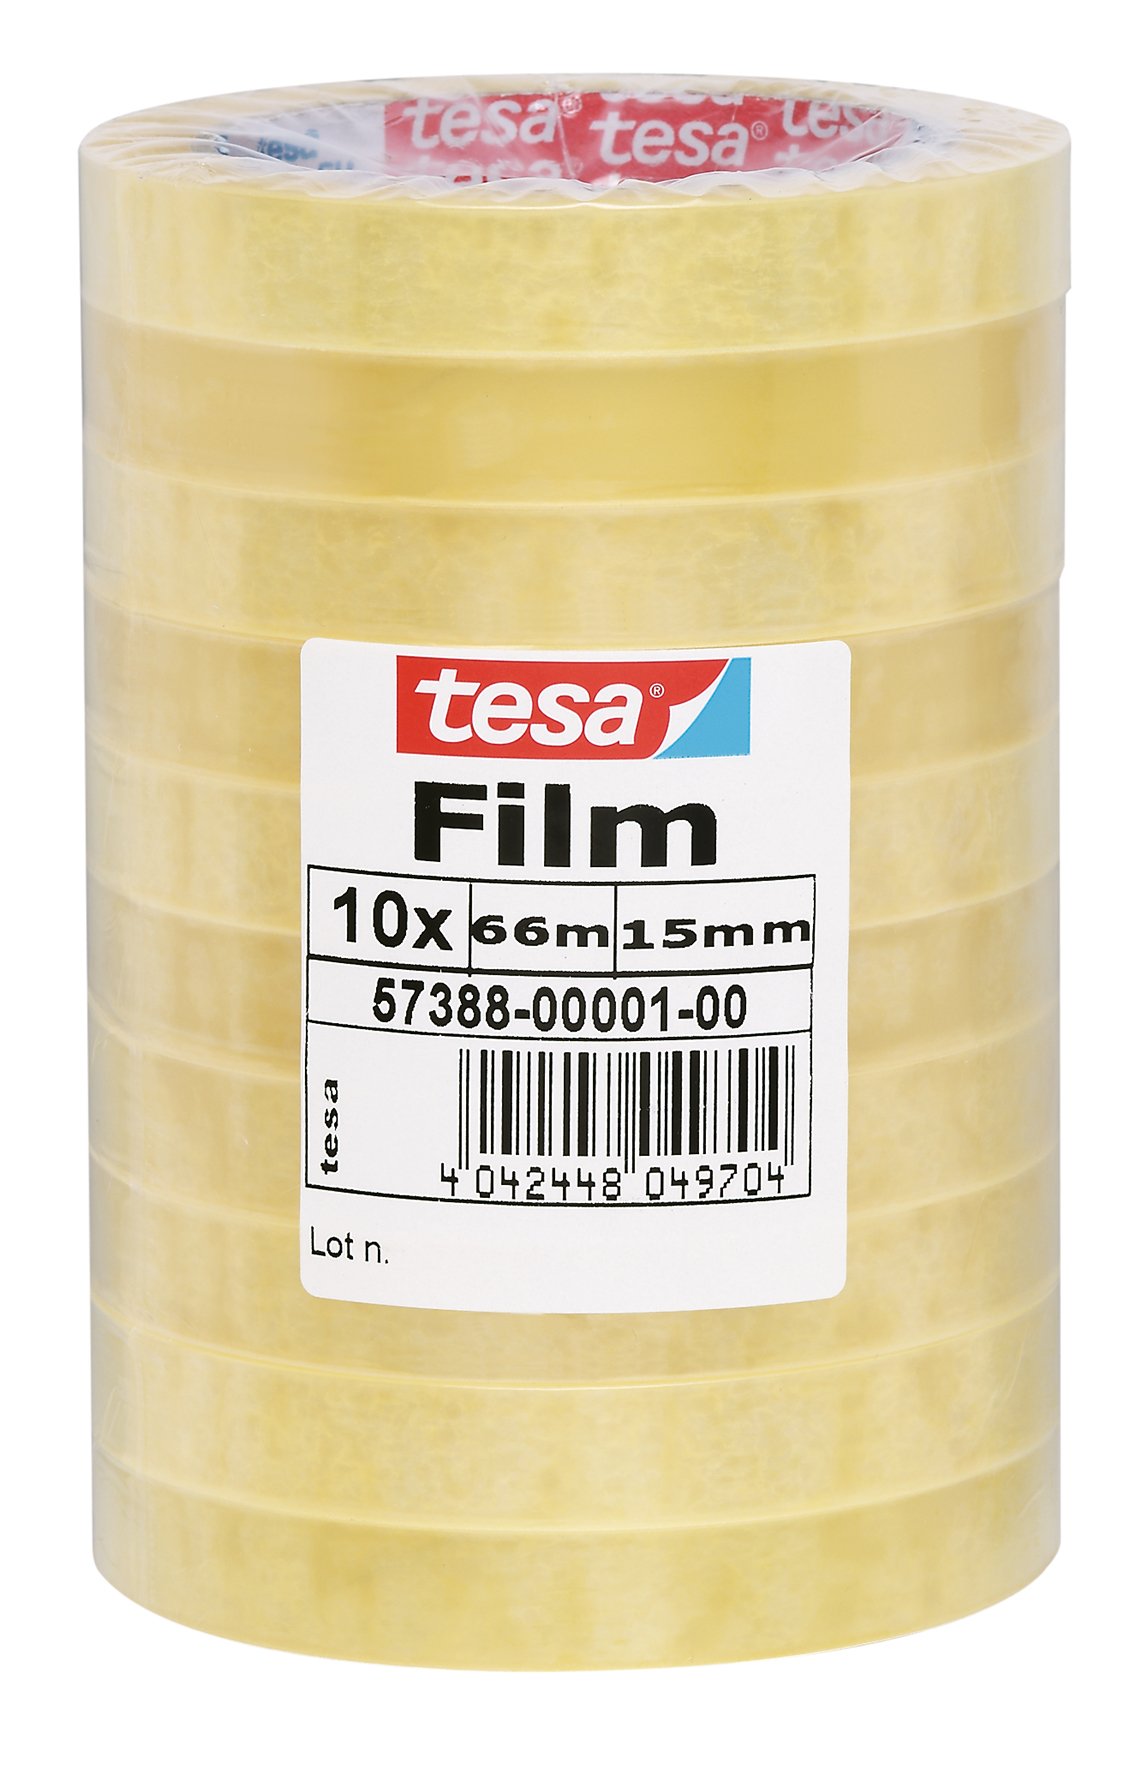 Kontorstejp Tesa standard transparent 15mm x 66m 42010013